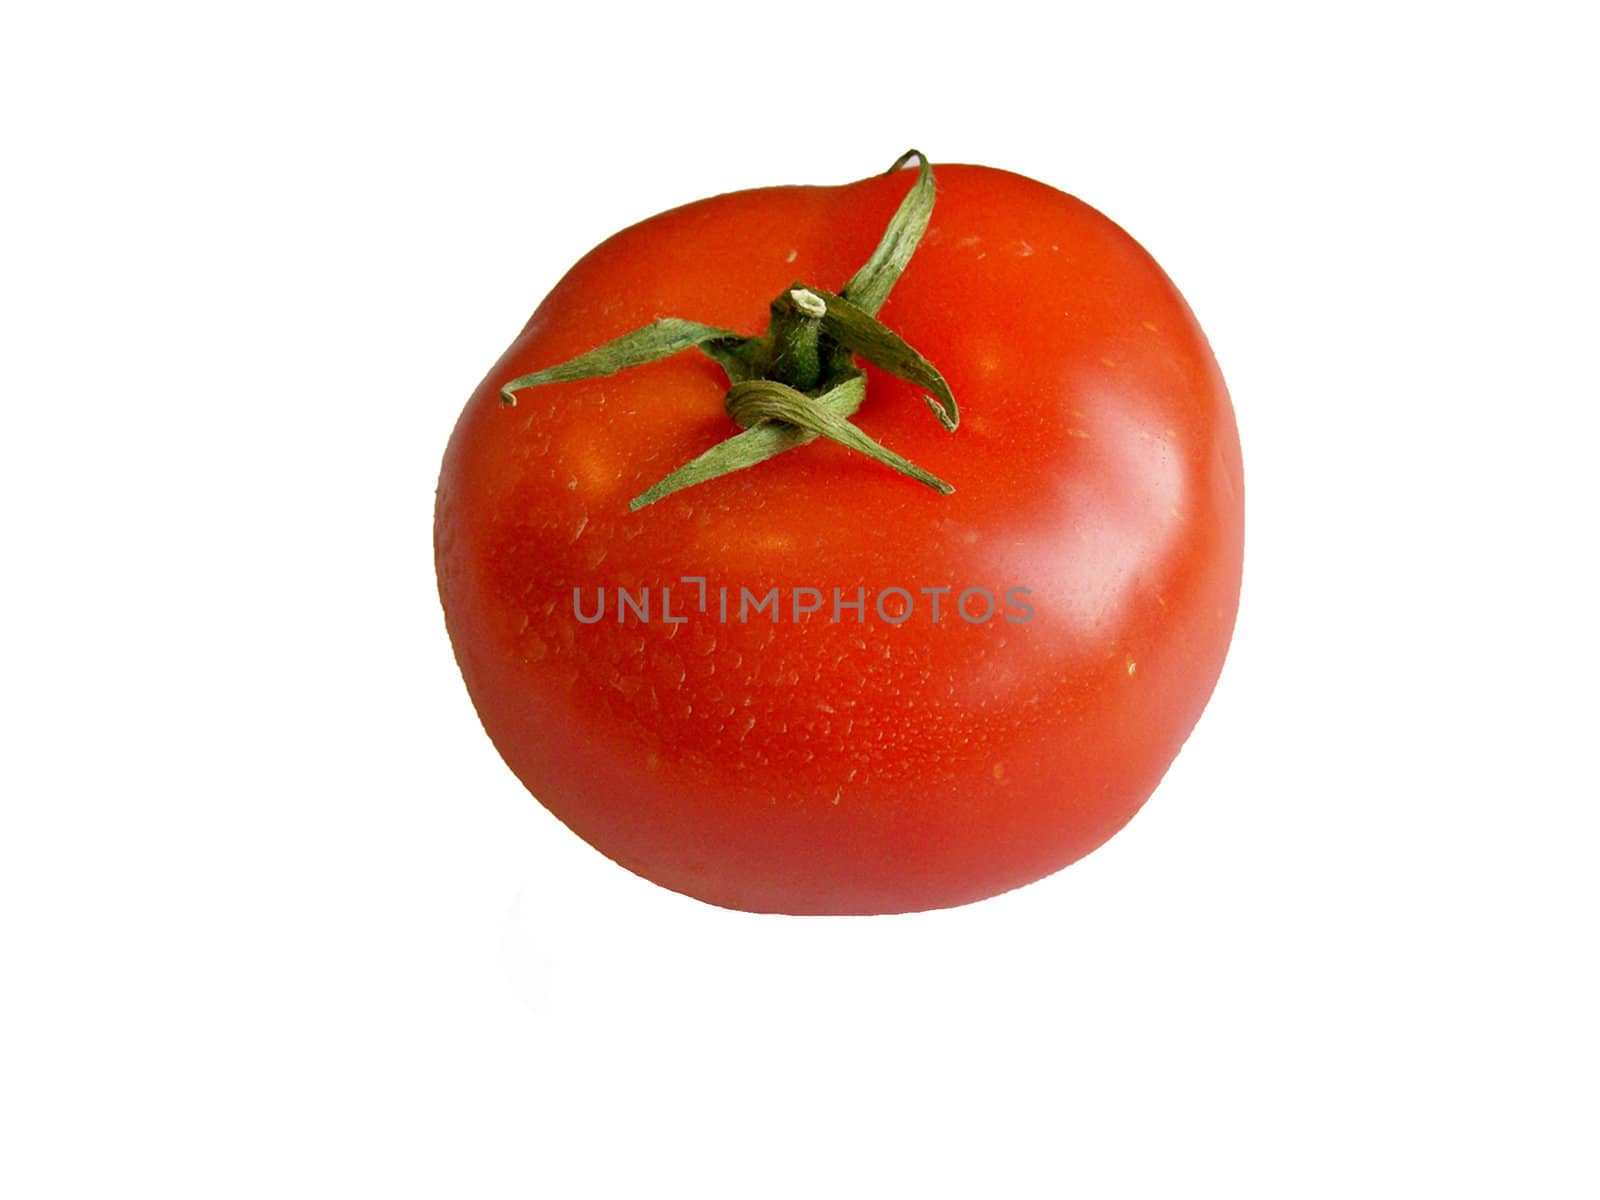 Ripe red tomato